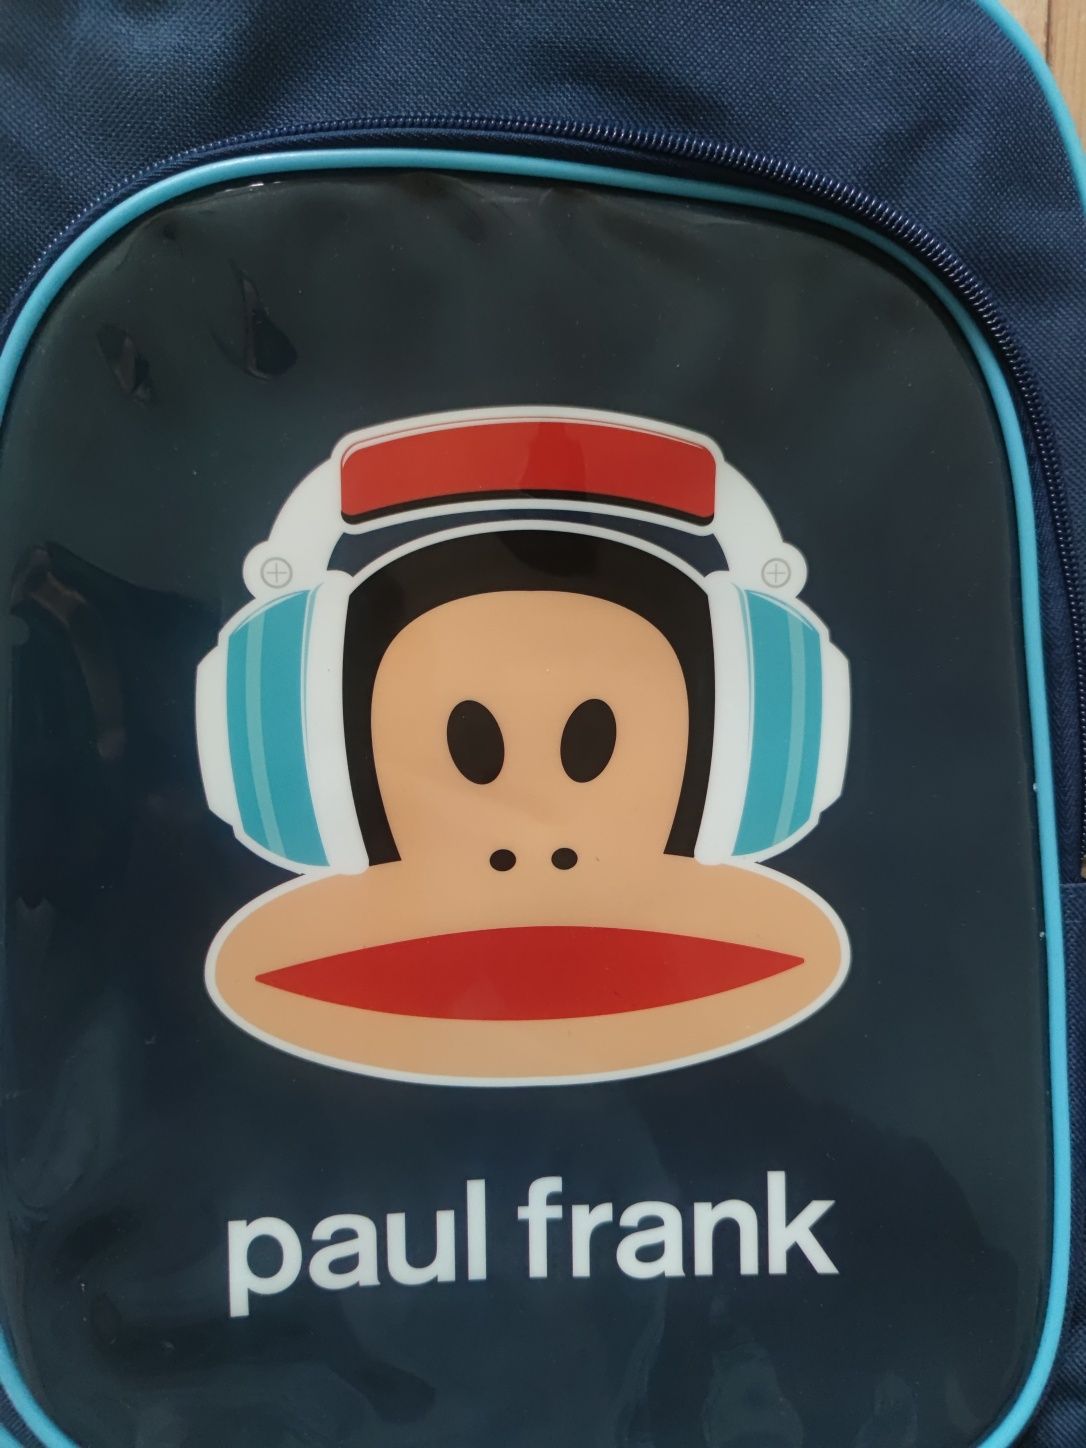 Nowy szkolny plecak Paul Frank blogerski niemiecki